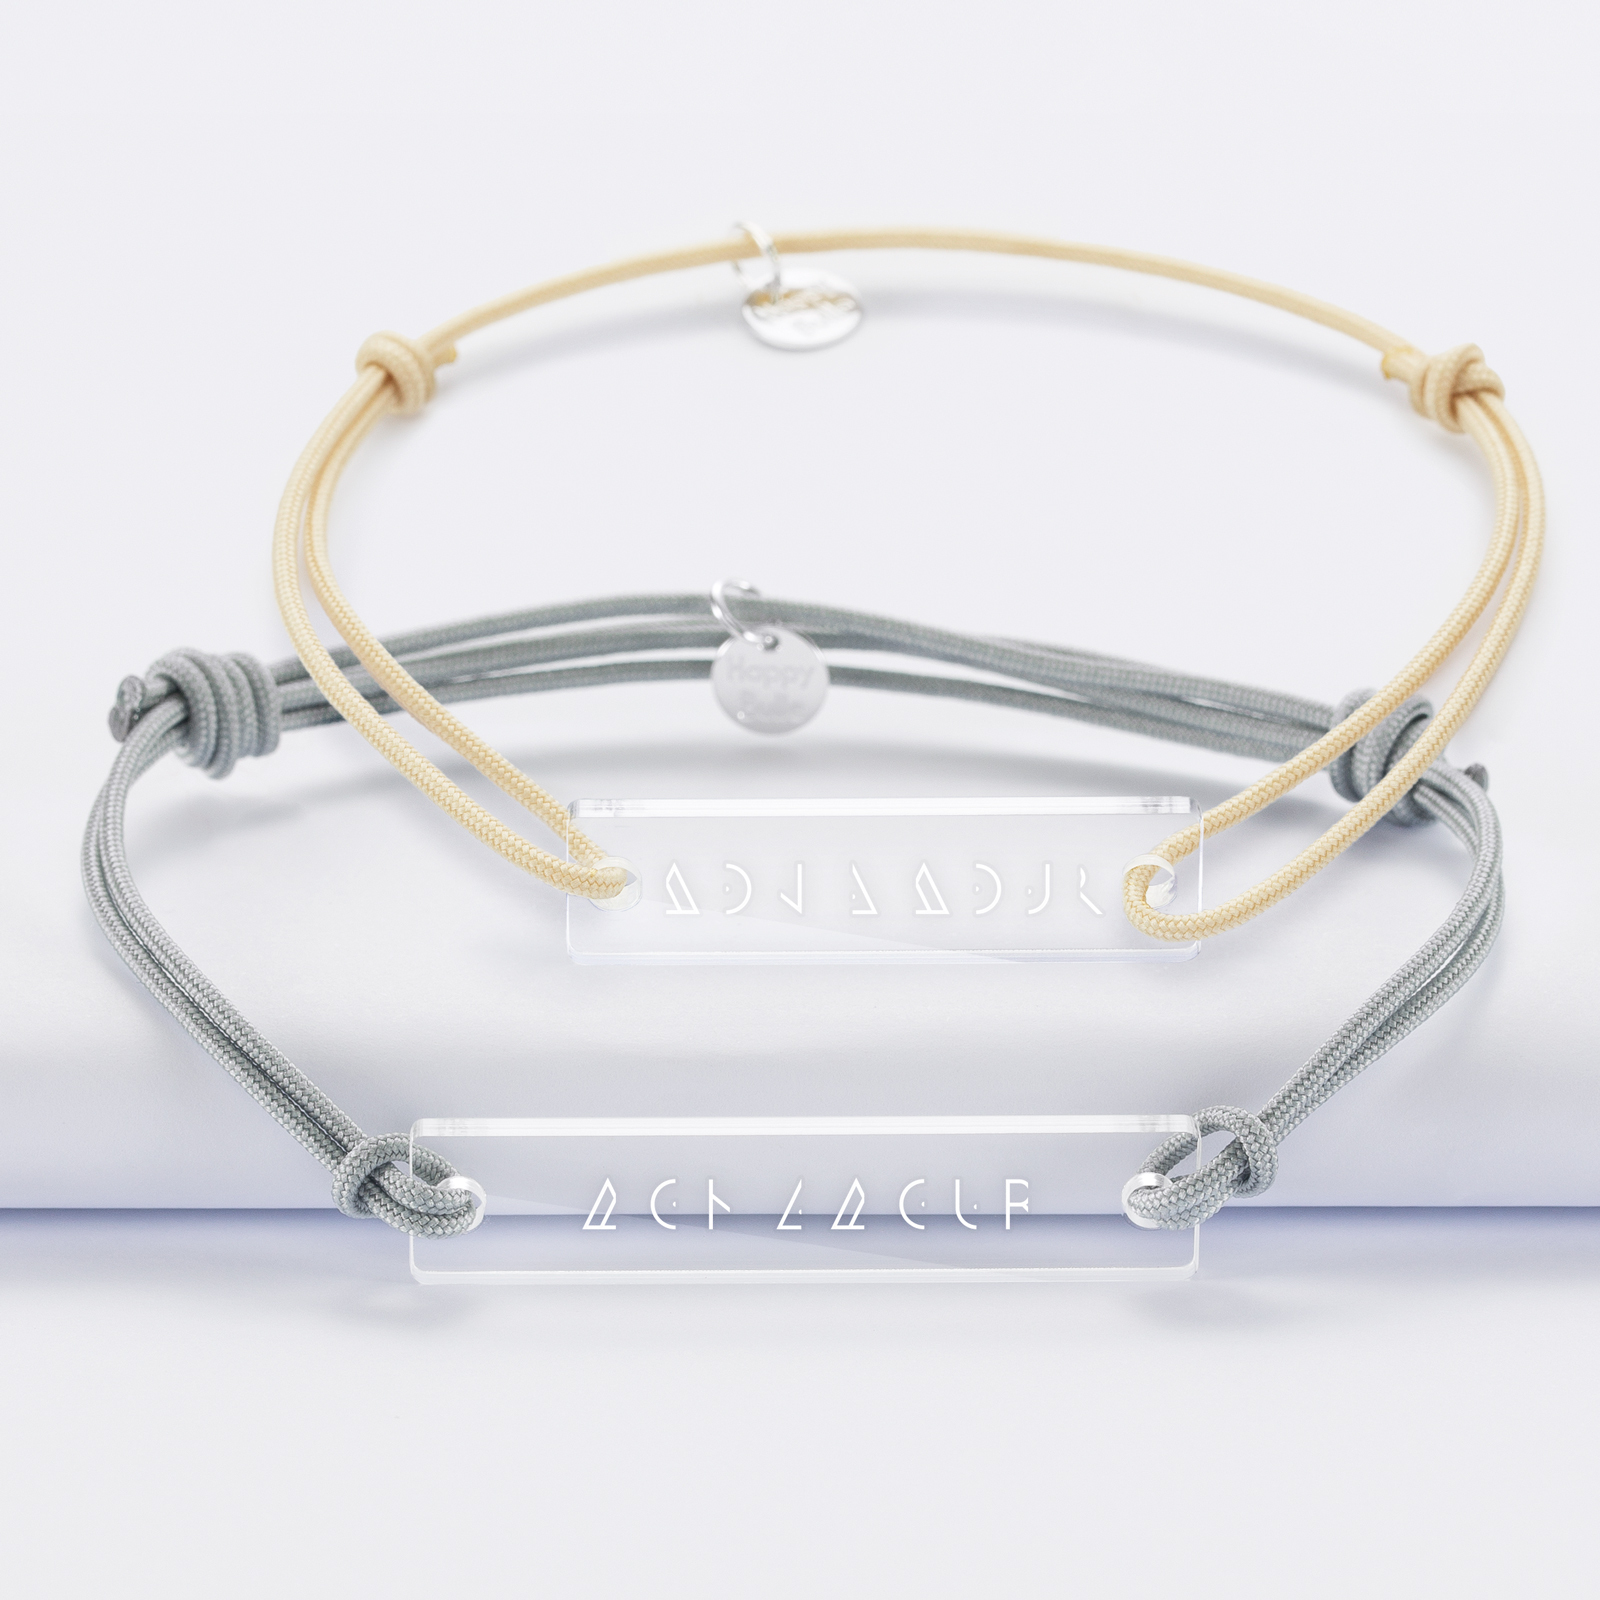 Duo de bracelets inséparables médailles gravées acrylique - Edition spéciale "mon amour" - 1